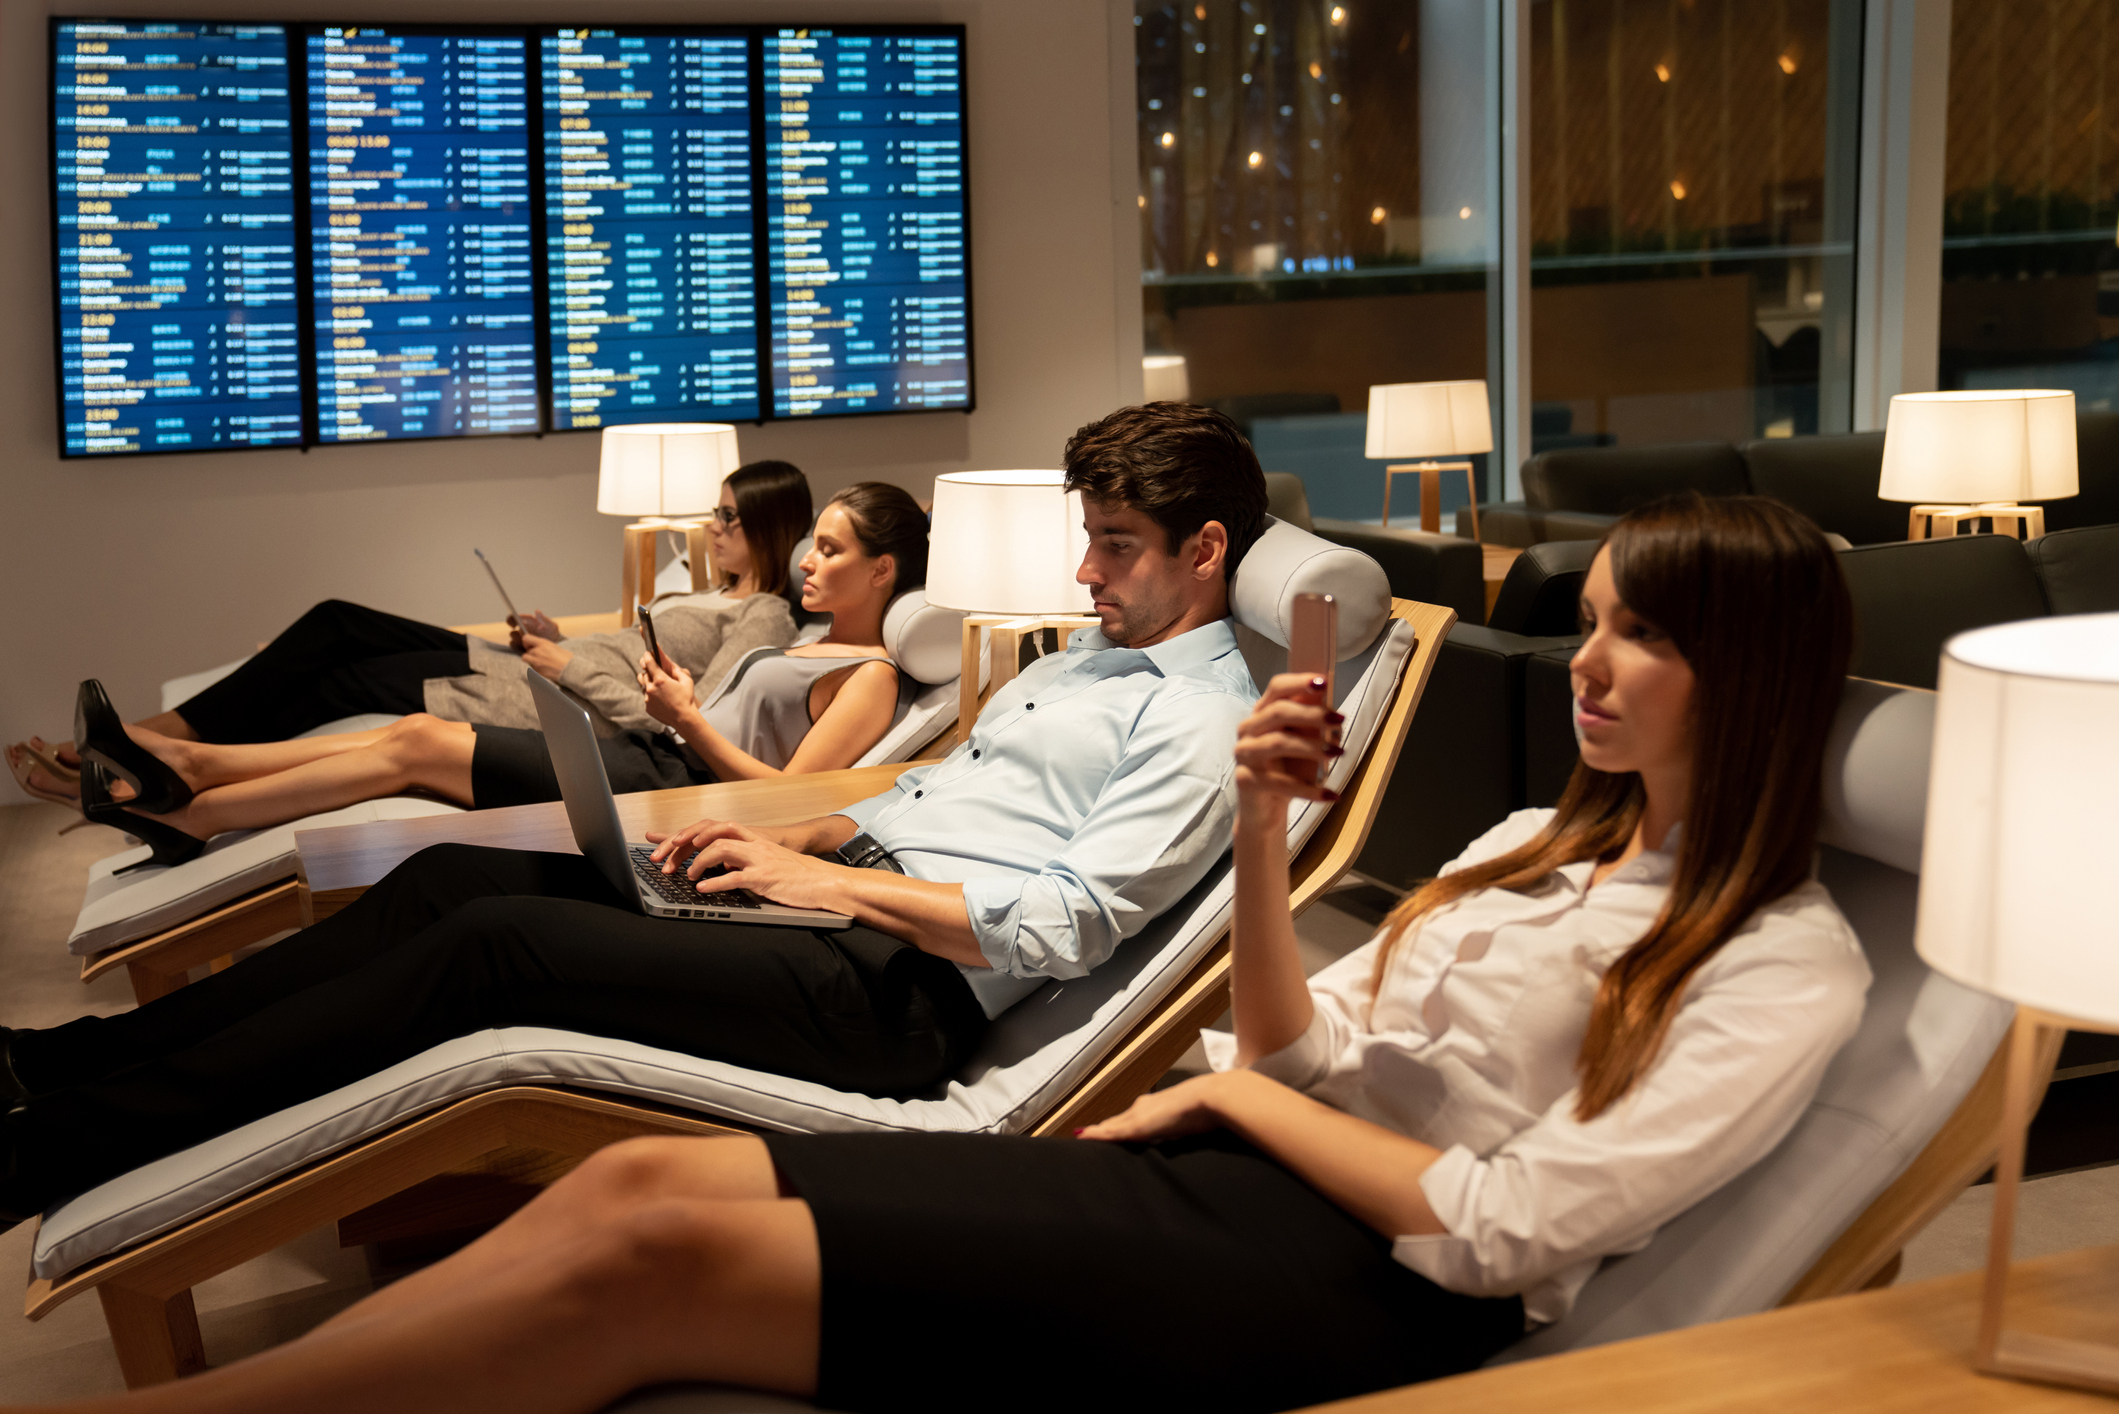 Slim geklede zakenreizigers ontspannen in een VIP-lounge op een luchthaven, op hun mobiele telefoon of laptop tijdens het wachten op hun vlucht